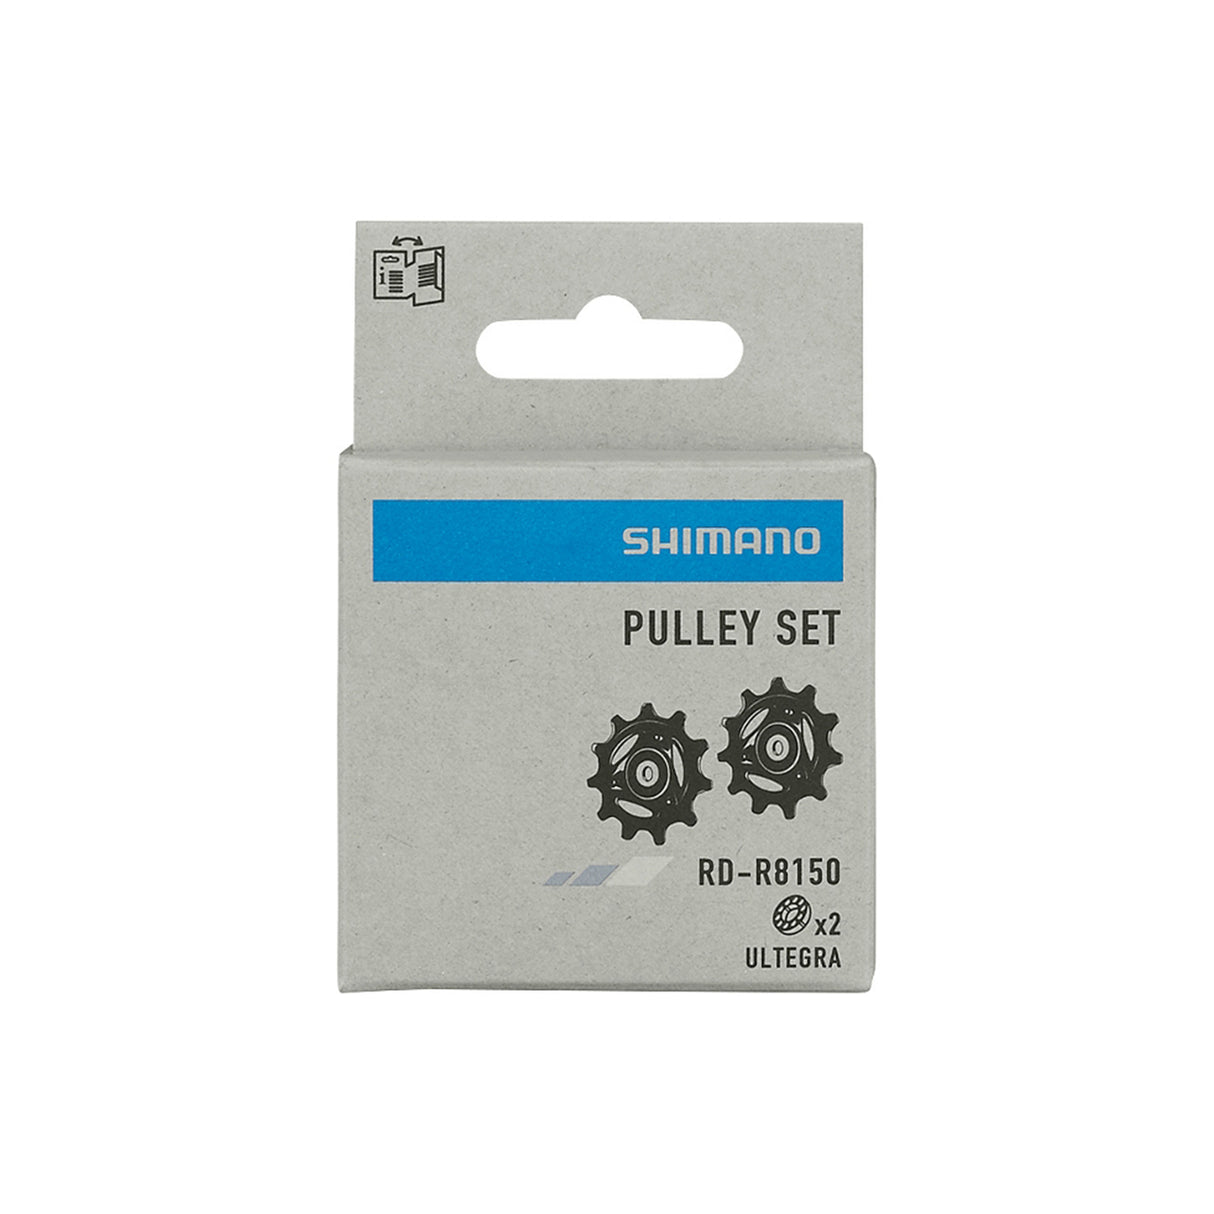 Shimano Pulley Set WP-Y3